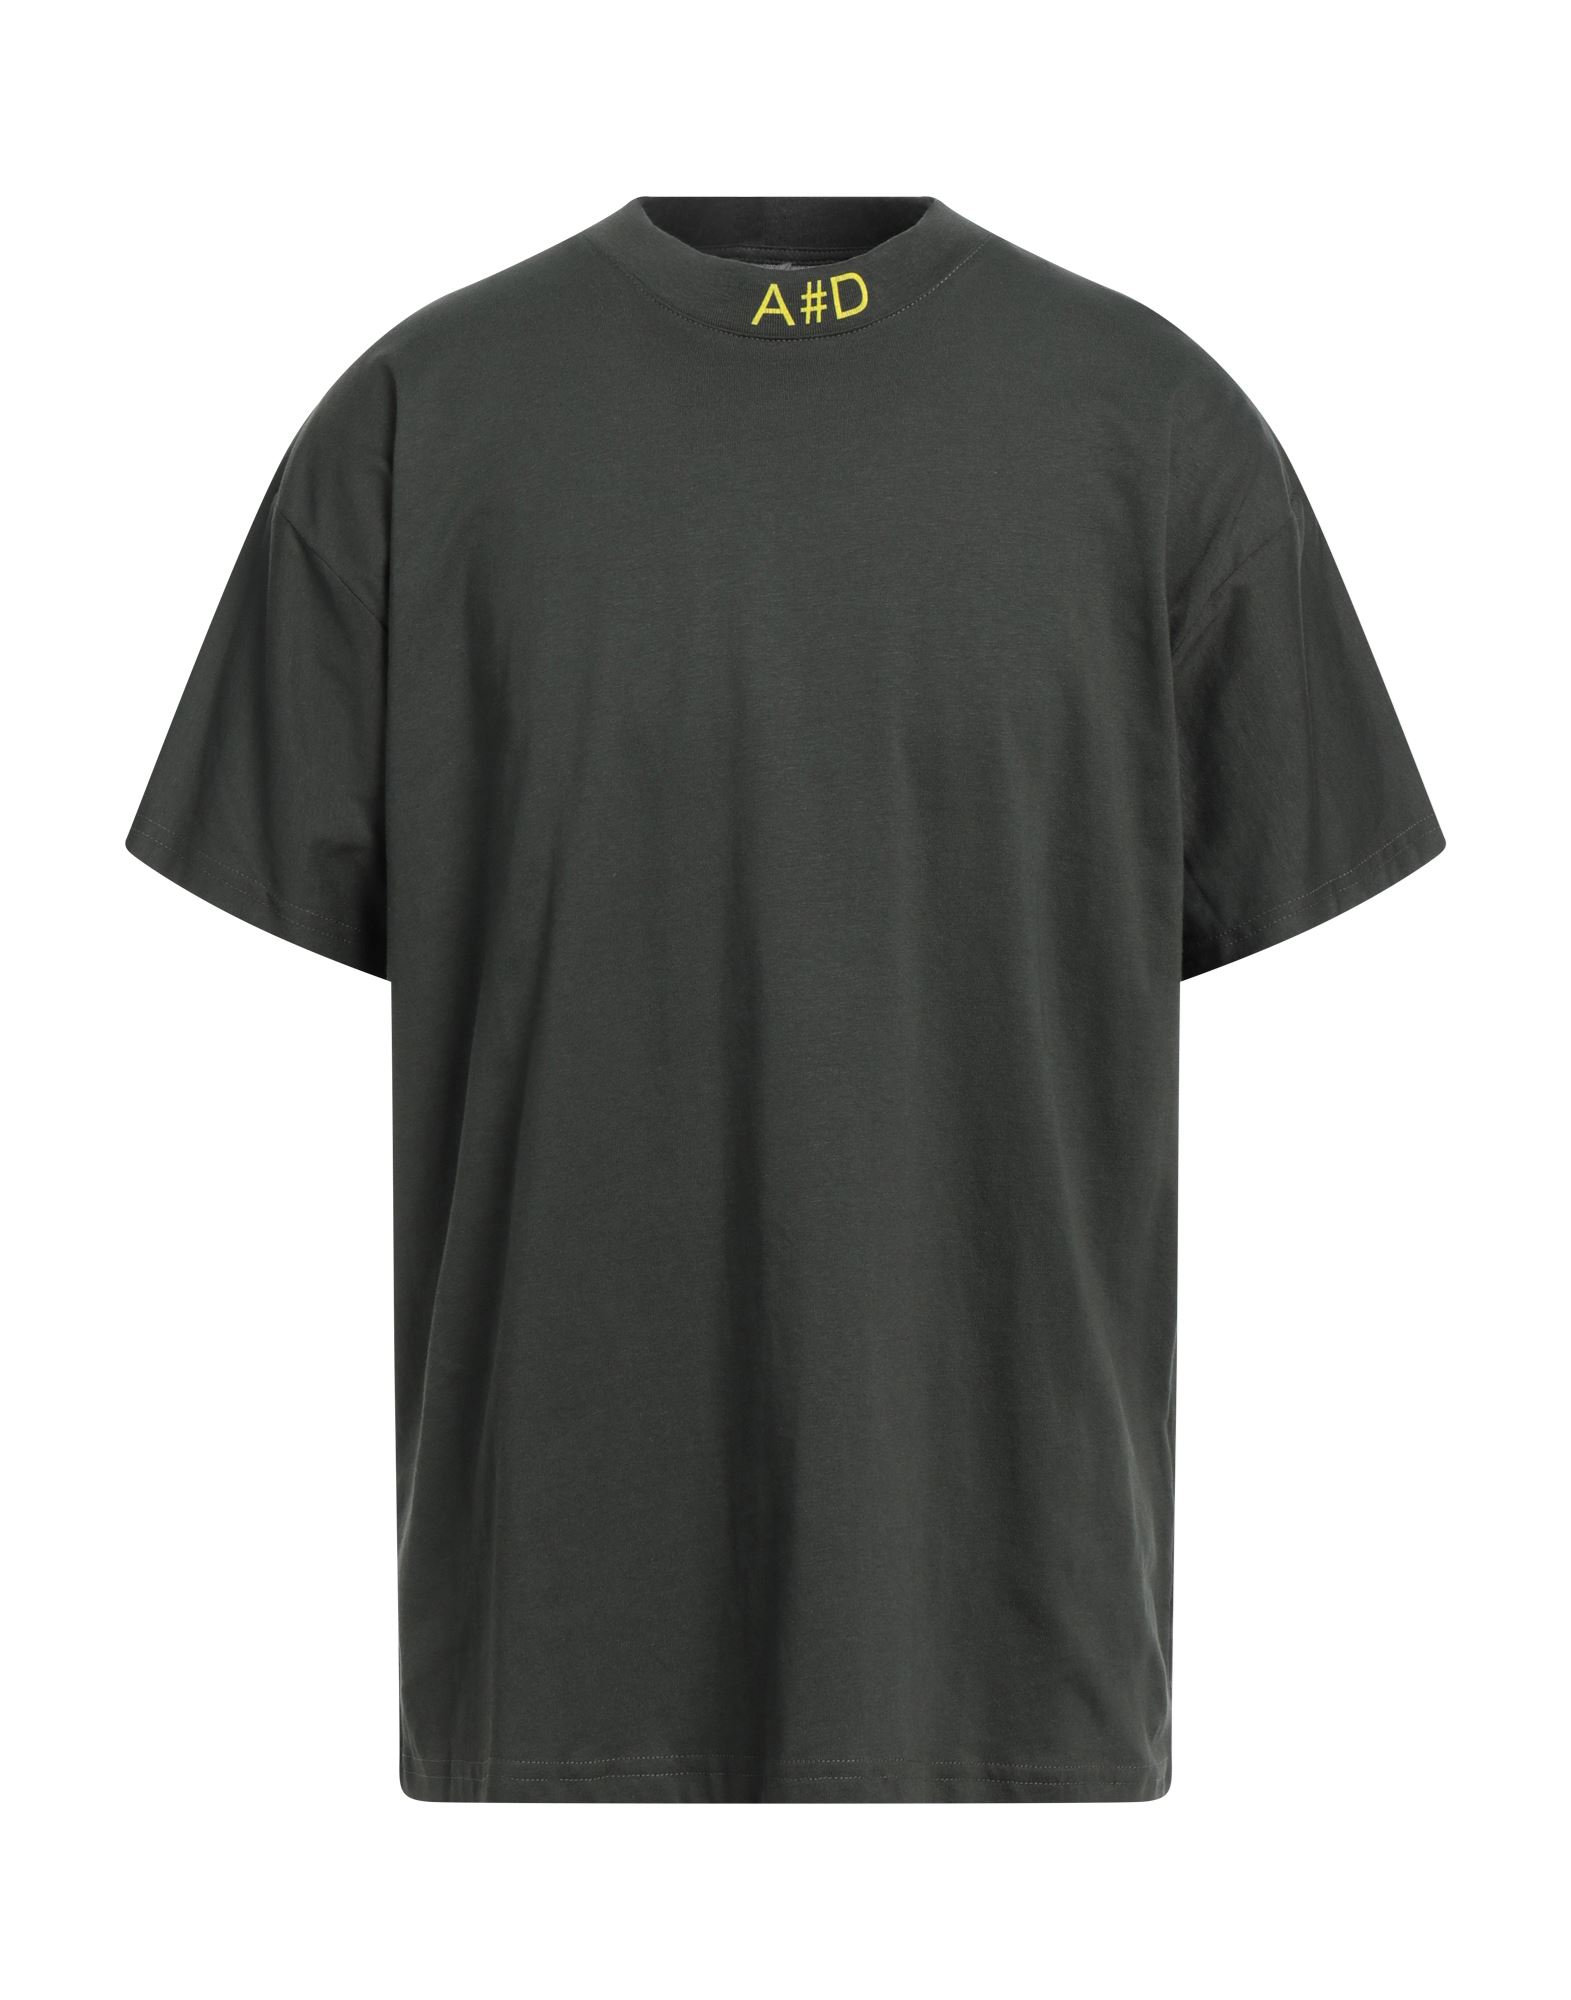 Alessandro Dell'acqua Man T-shirt Dark Green Size Xl Cotton